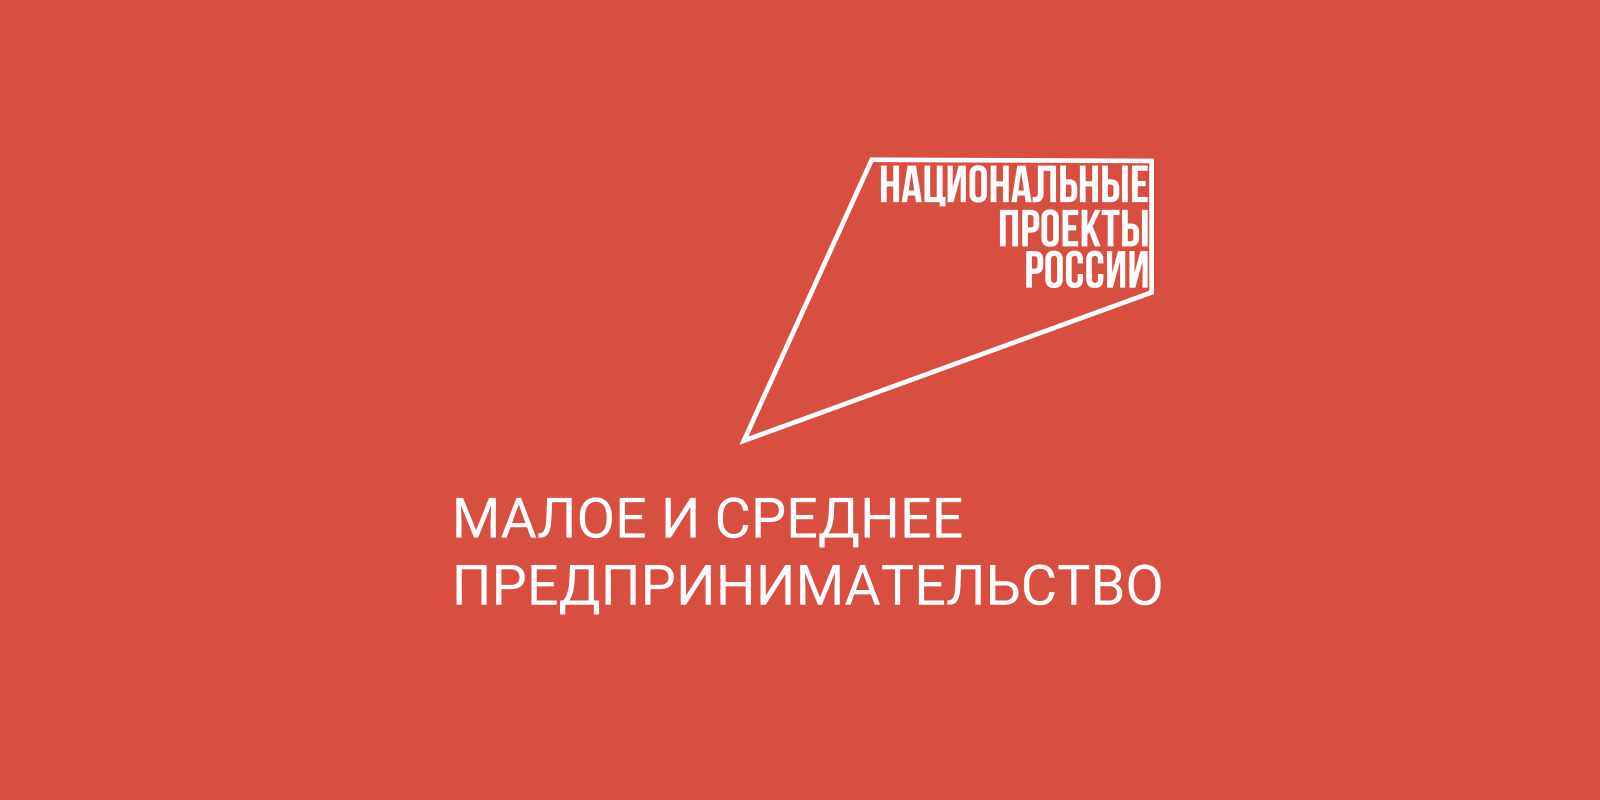 Вологодская область входит в ТОП-30 рейтинга  85 субъектов РФ по уровню достижения нацпроектов.